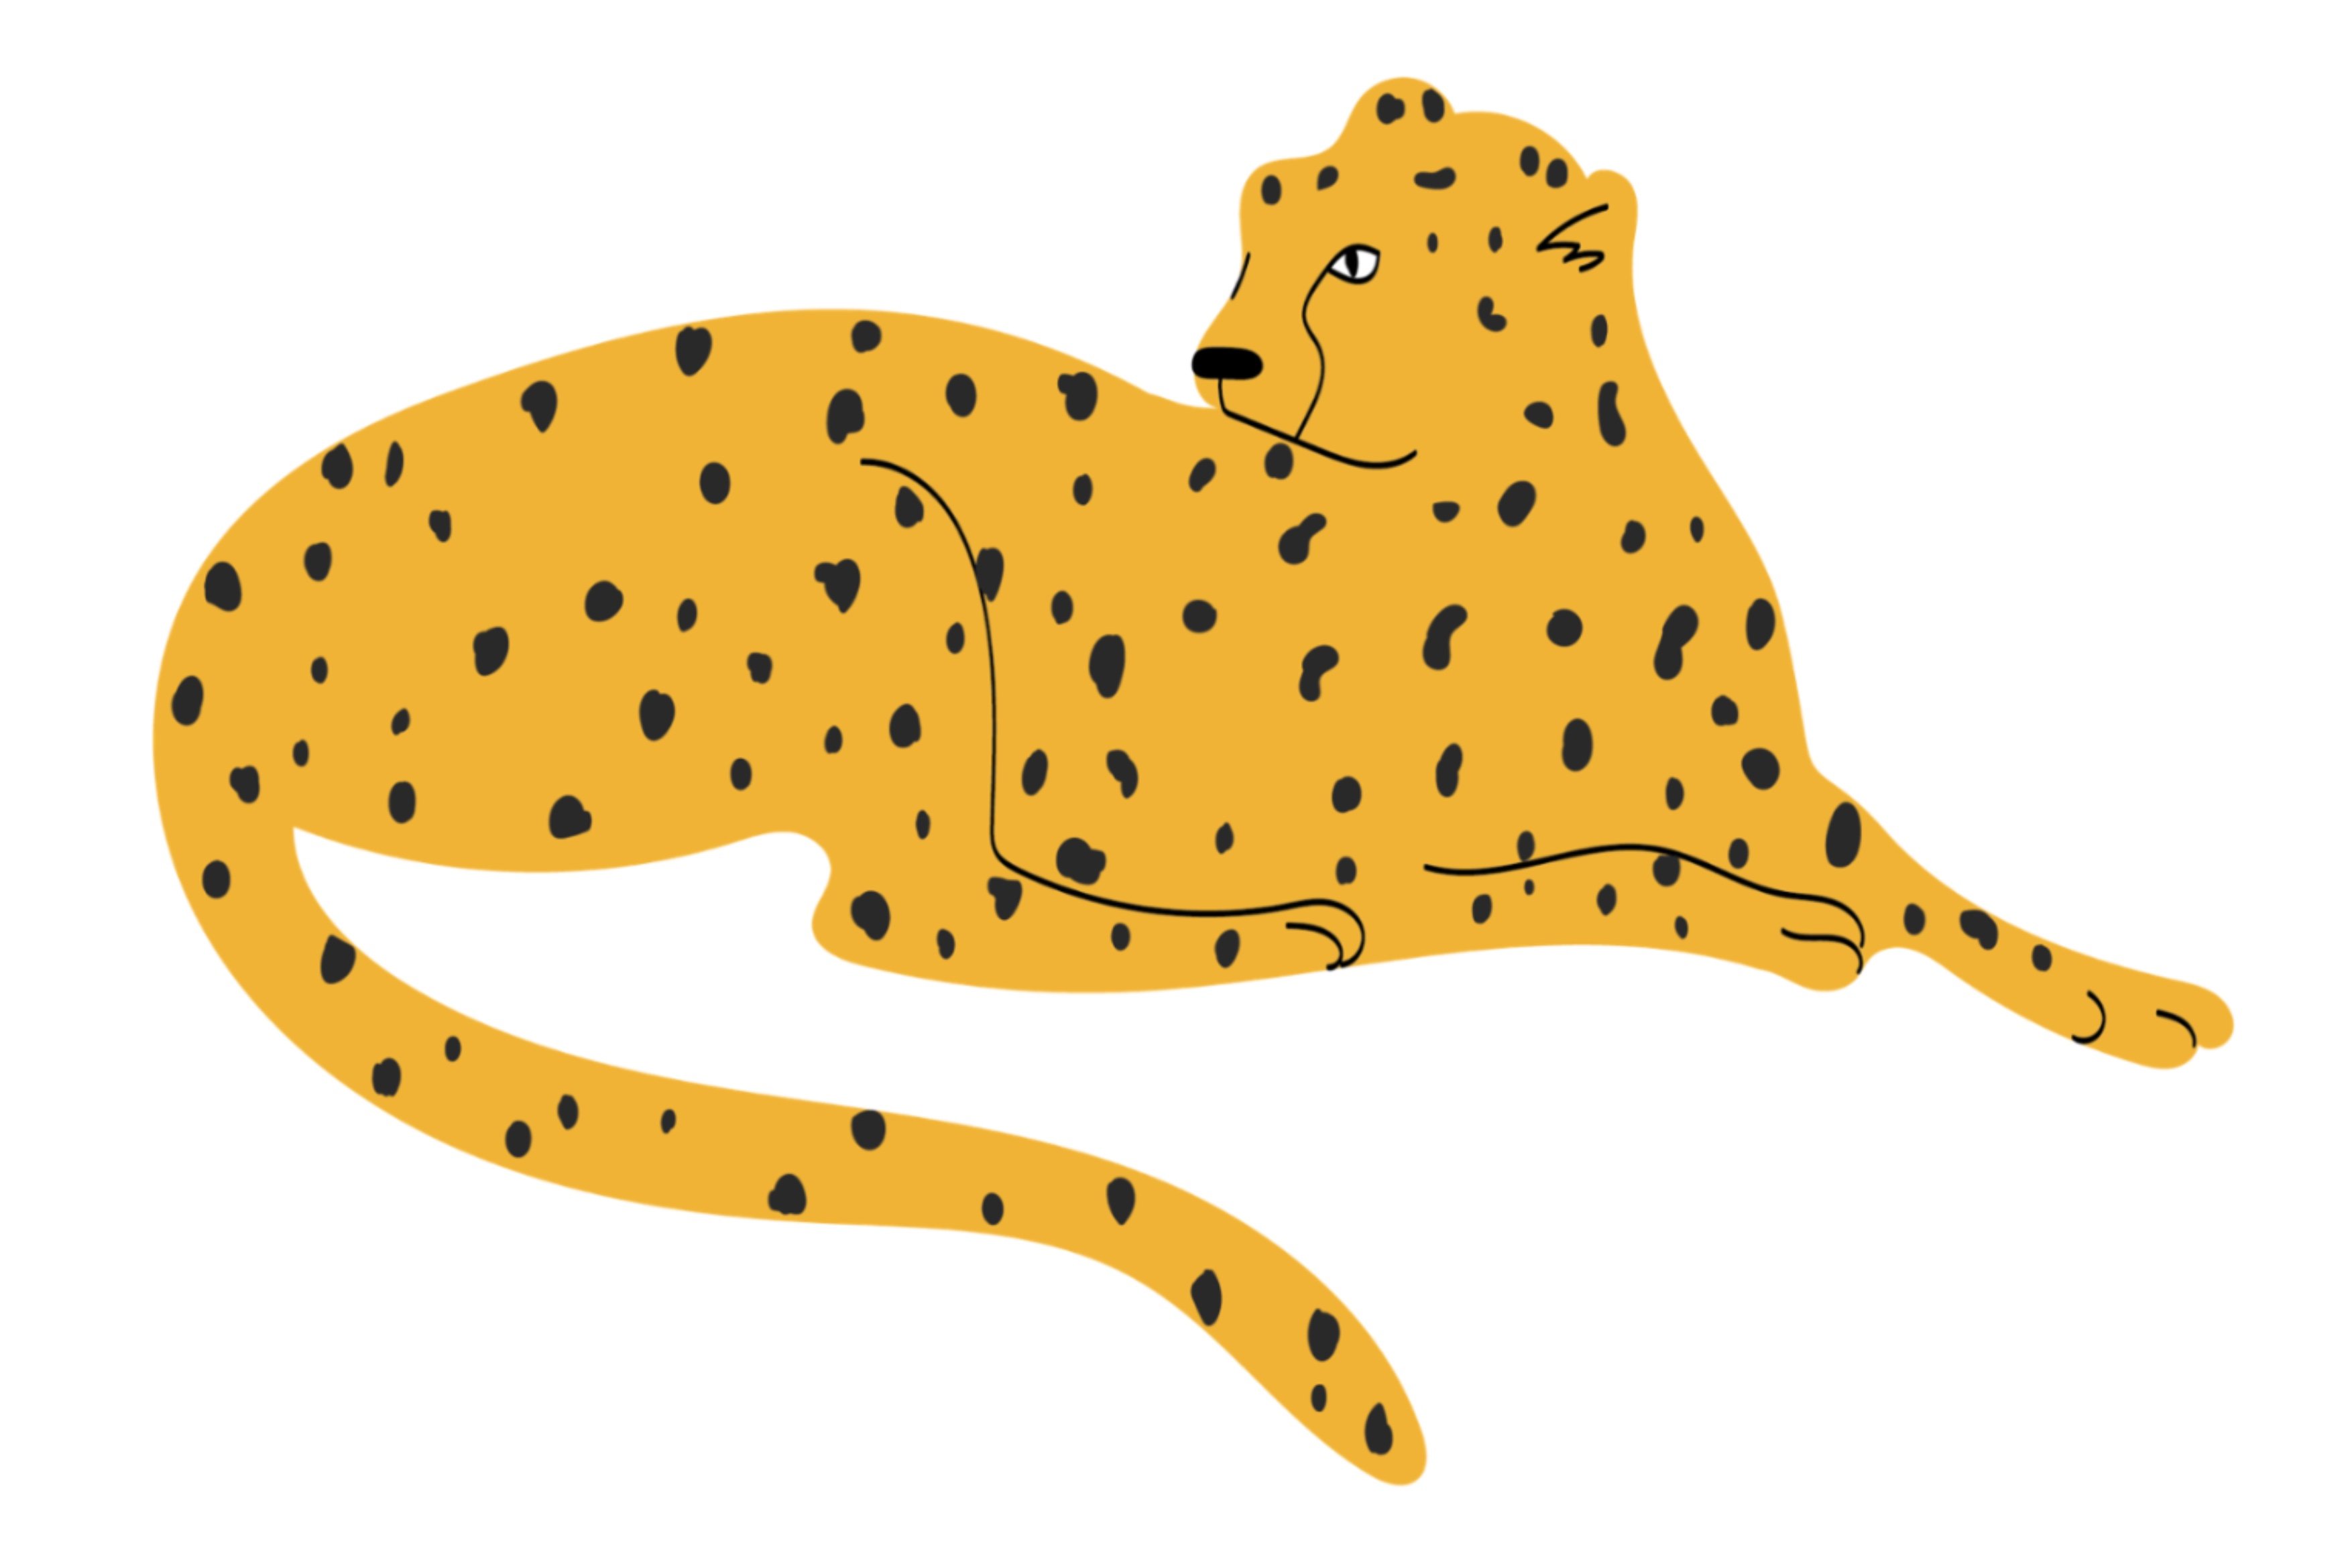 Calm orange cheetah.